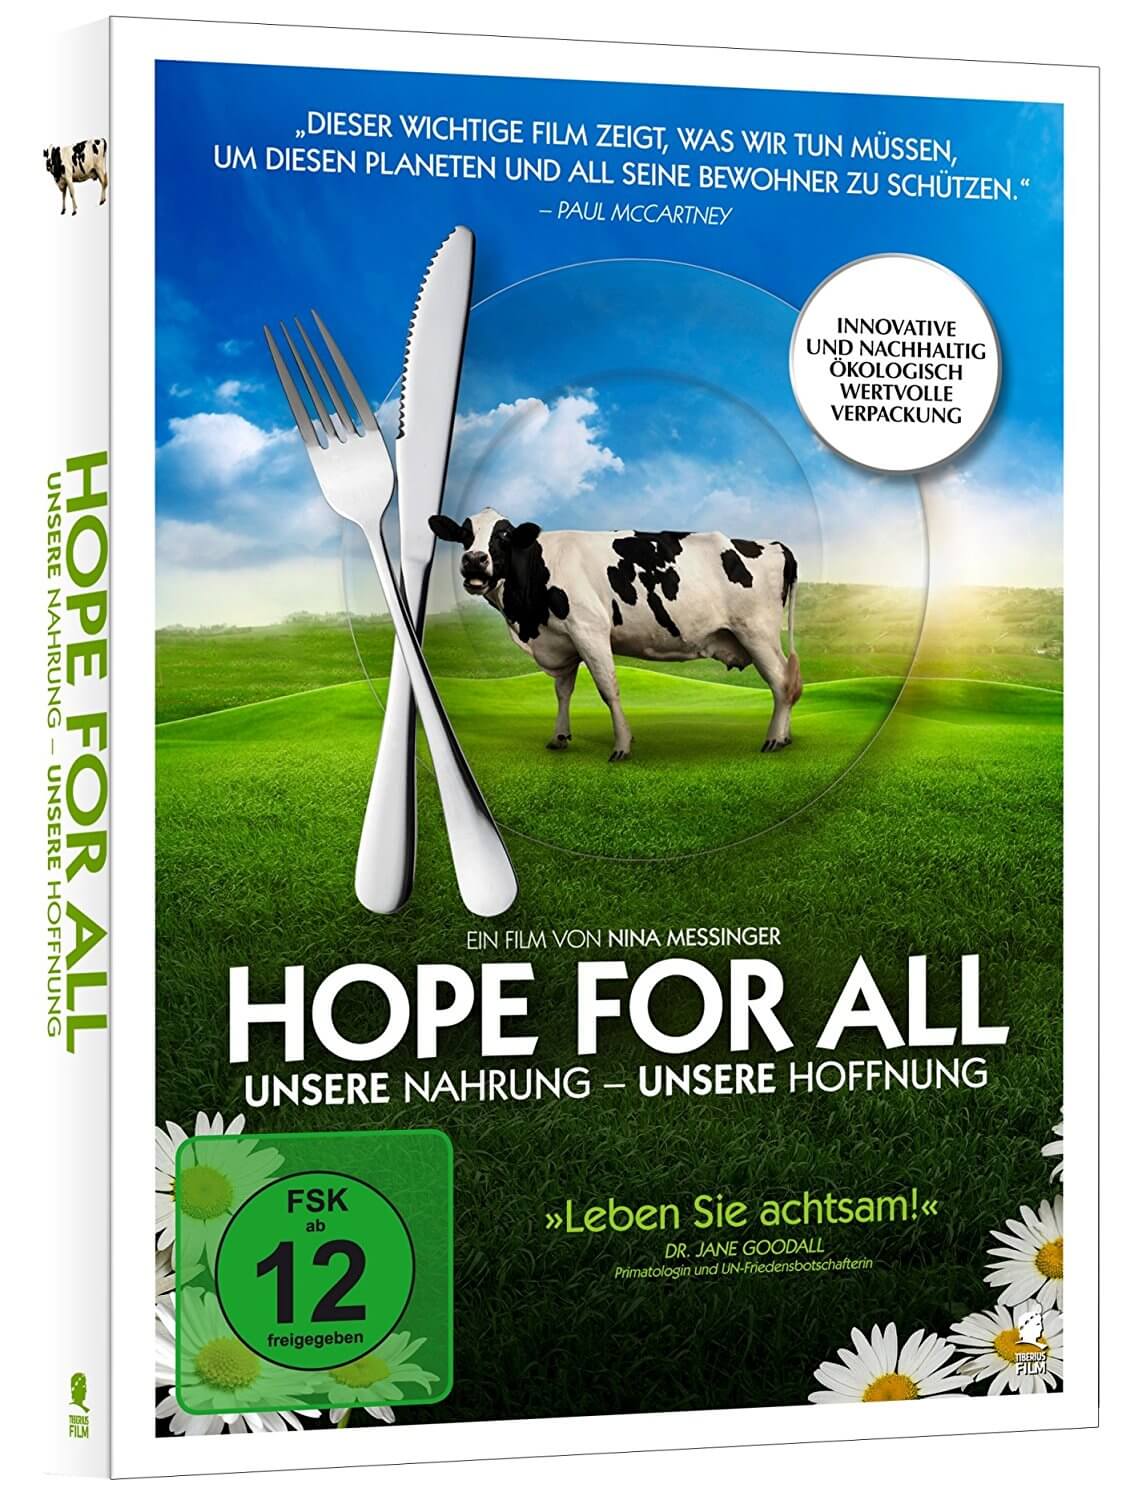 Hope for all DVD vegane Geschenke Weihnachten